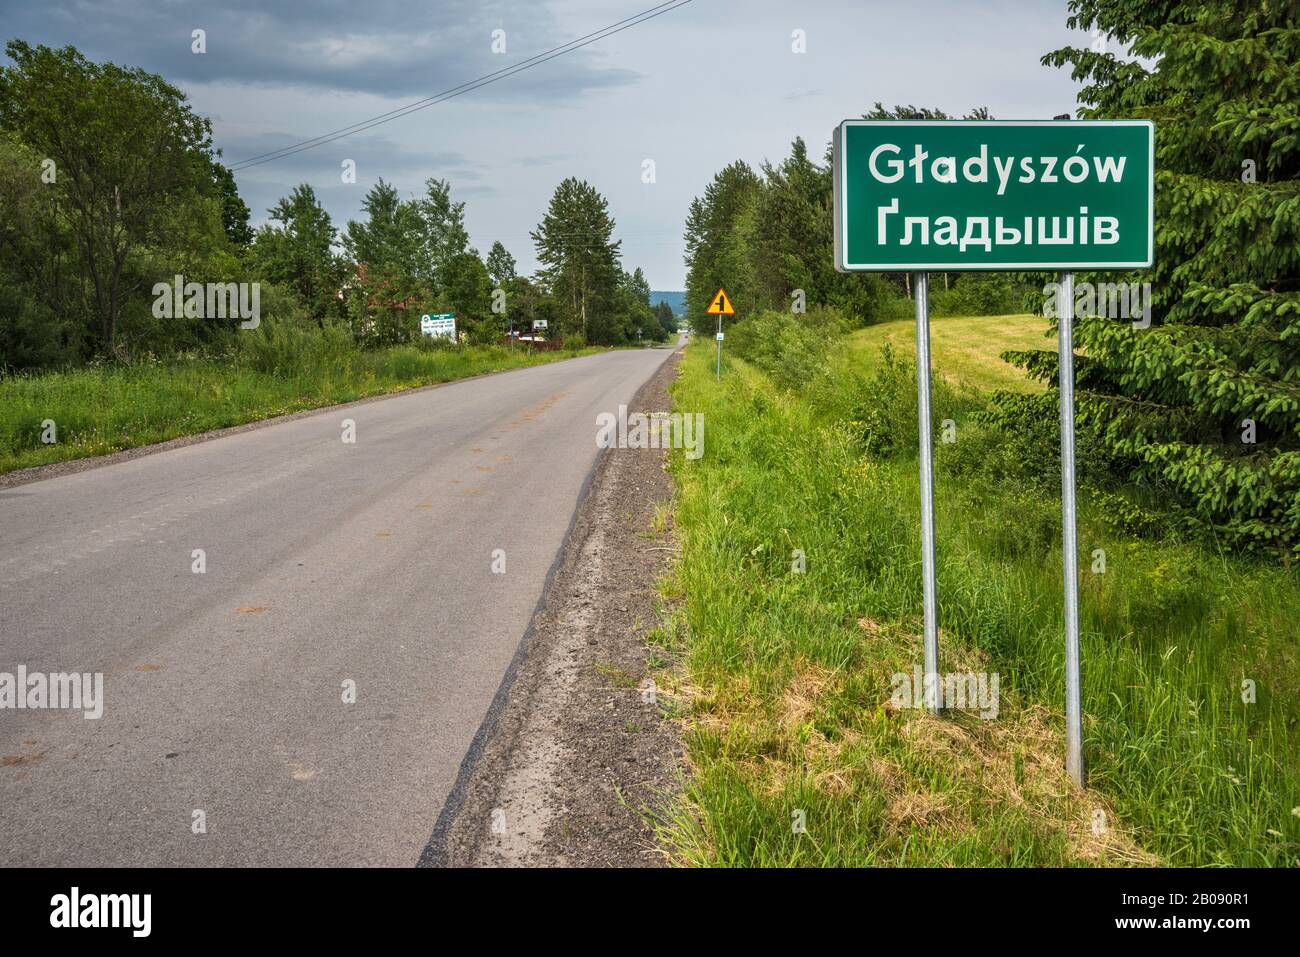 Zweisprachige, polnische und ukrainische Straßenschild im Dorf Gladyszow, Bergkette der unteren Beskiden, Westkarpaten, Malopolska, Polen Stockfoto